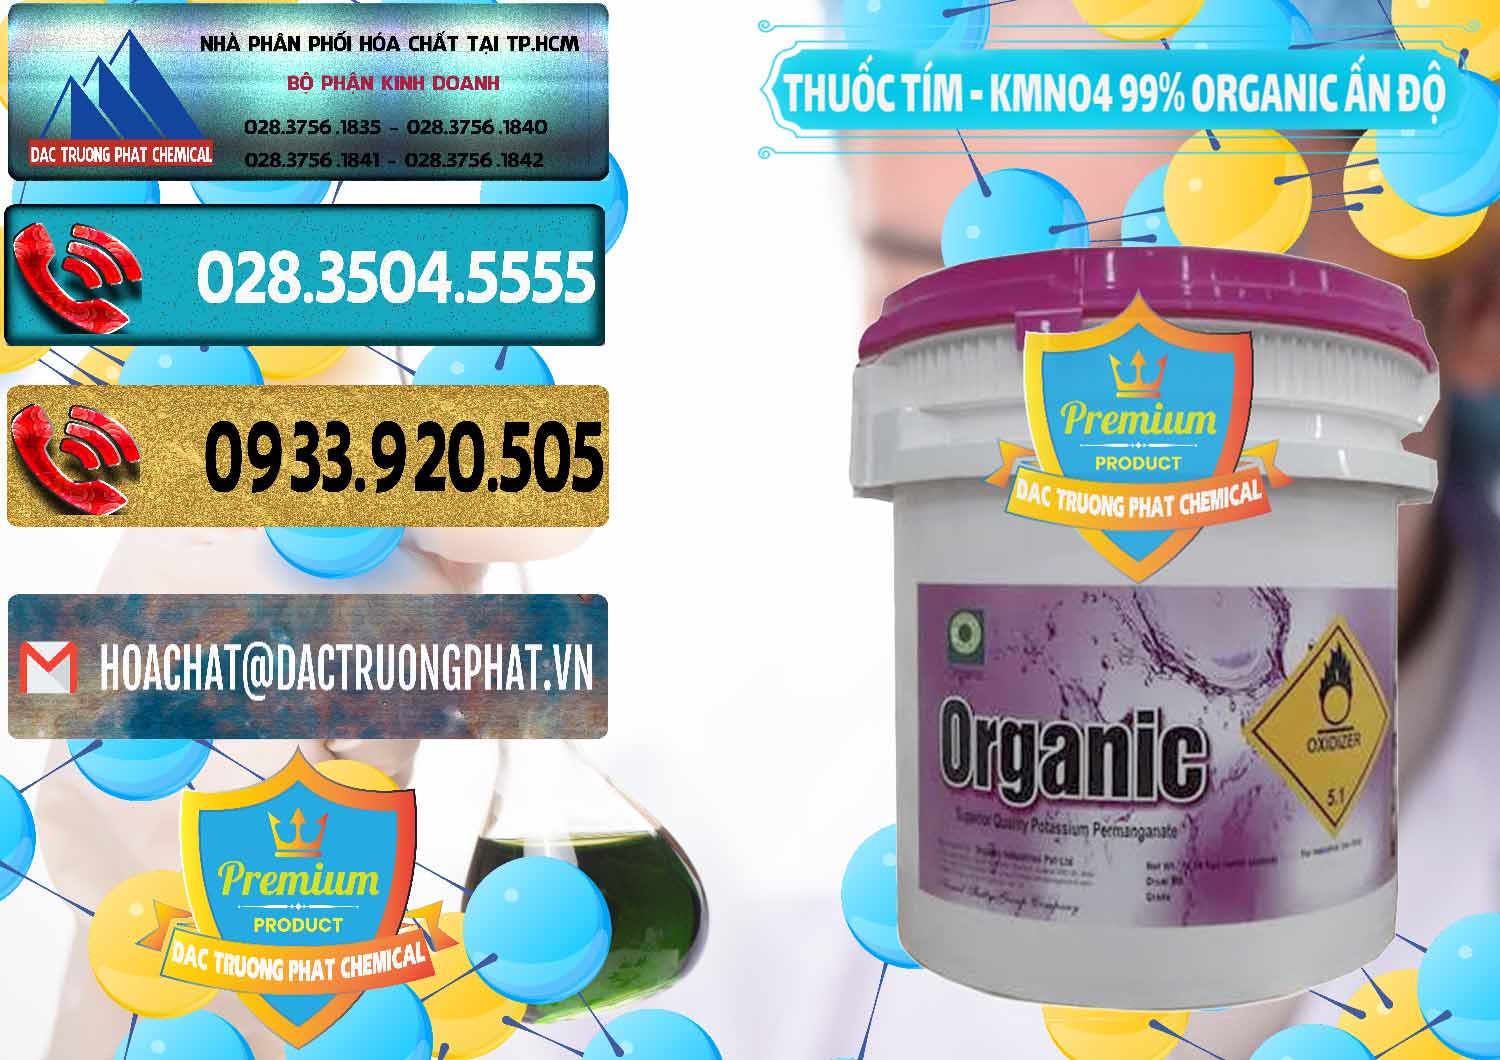 Đơn vị chuyên bán ( cung cấp ) Thuốc Tím - KMNO4 99% Organic Ấn Độ India - 0216 - Công ty chuyên nhập khẩu _ cung cấp hóa chất tại TP.HCM - hoachatdetnhuom.com